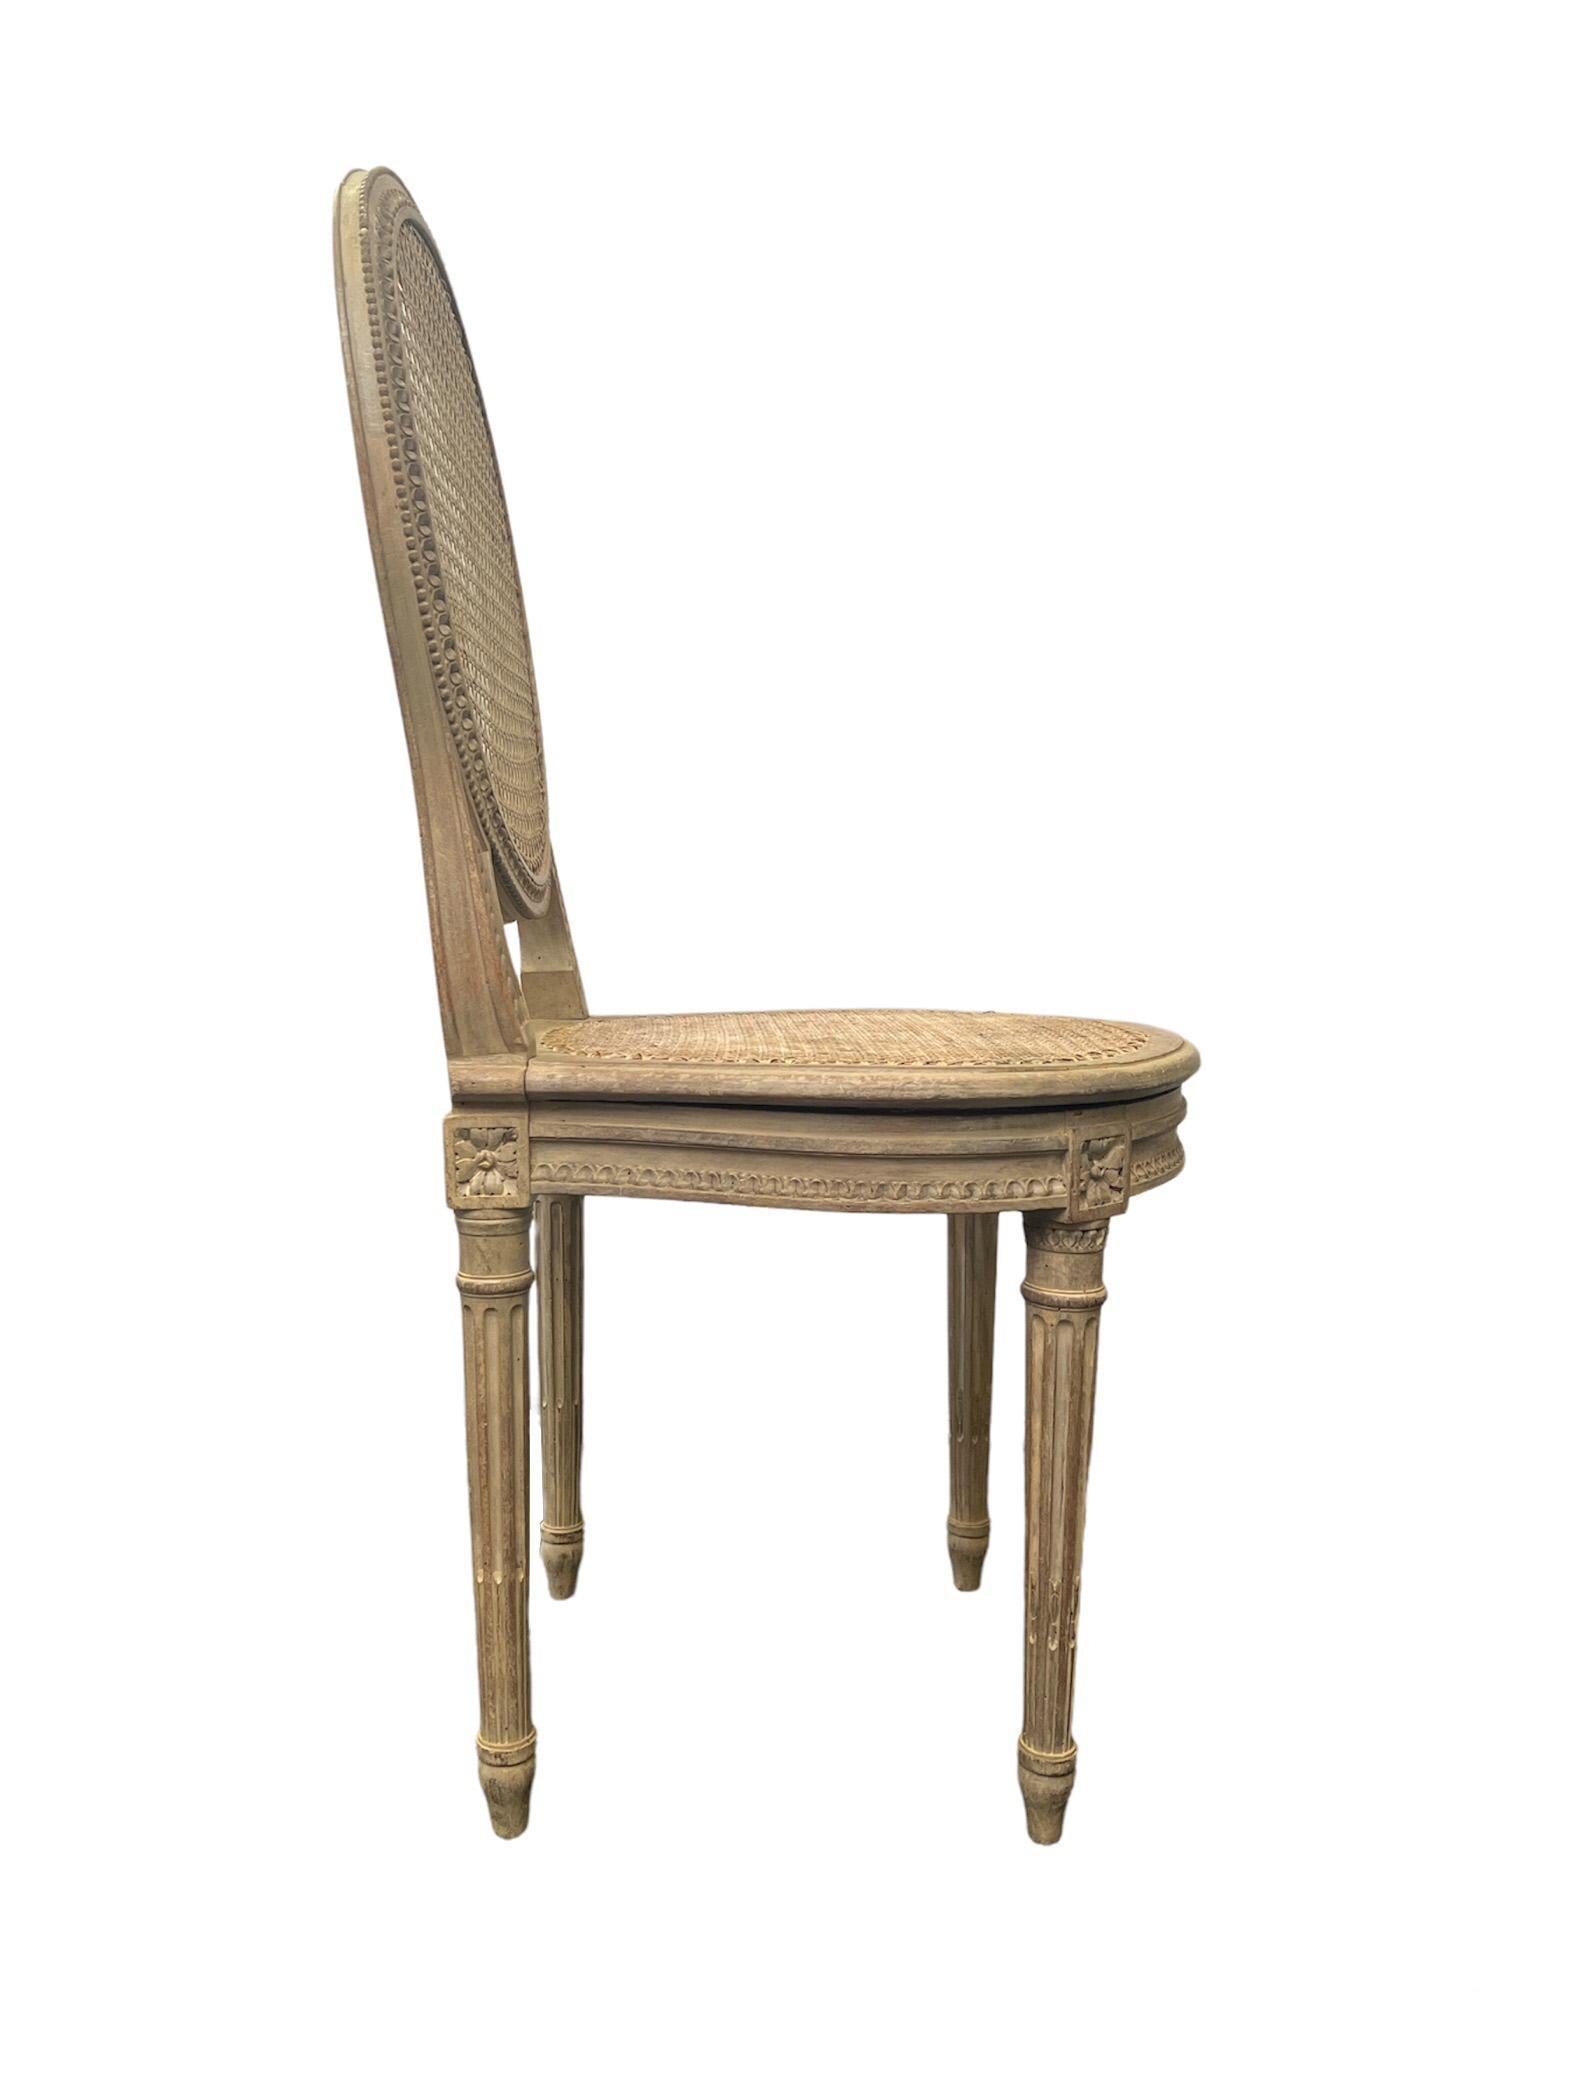 Beistellstuhl mit Ballonrücken im Louis XVI-Stil. Das Rohr ist in gutem Zustand und der Stuhl hat noch seine ursprüngliche Patina. 

Eigentum des geschätzten Innenarchitekten Juan Montoya. Juan Montoya ist einer der renommiertesten und produktivsten